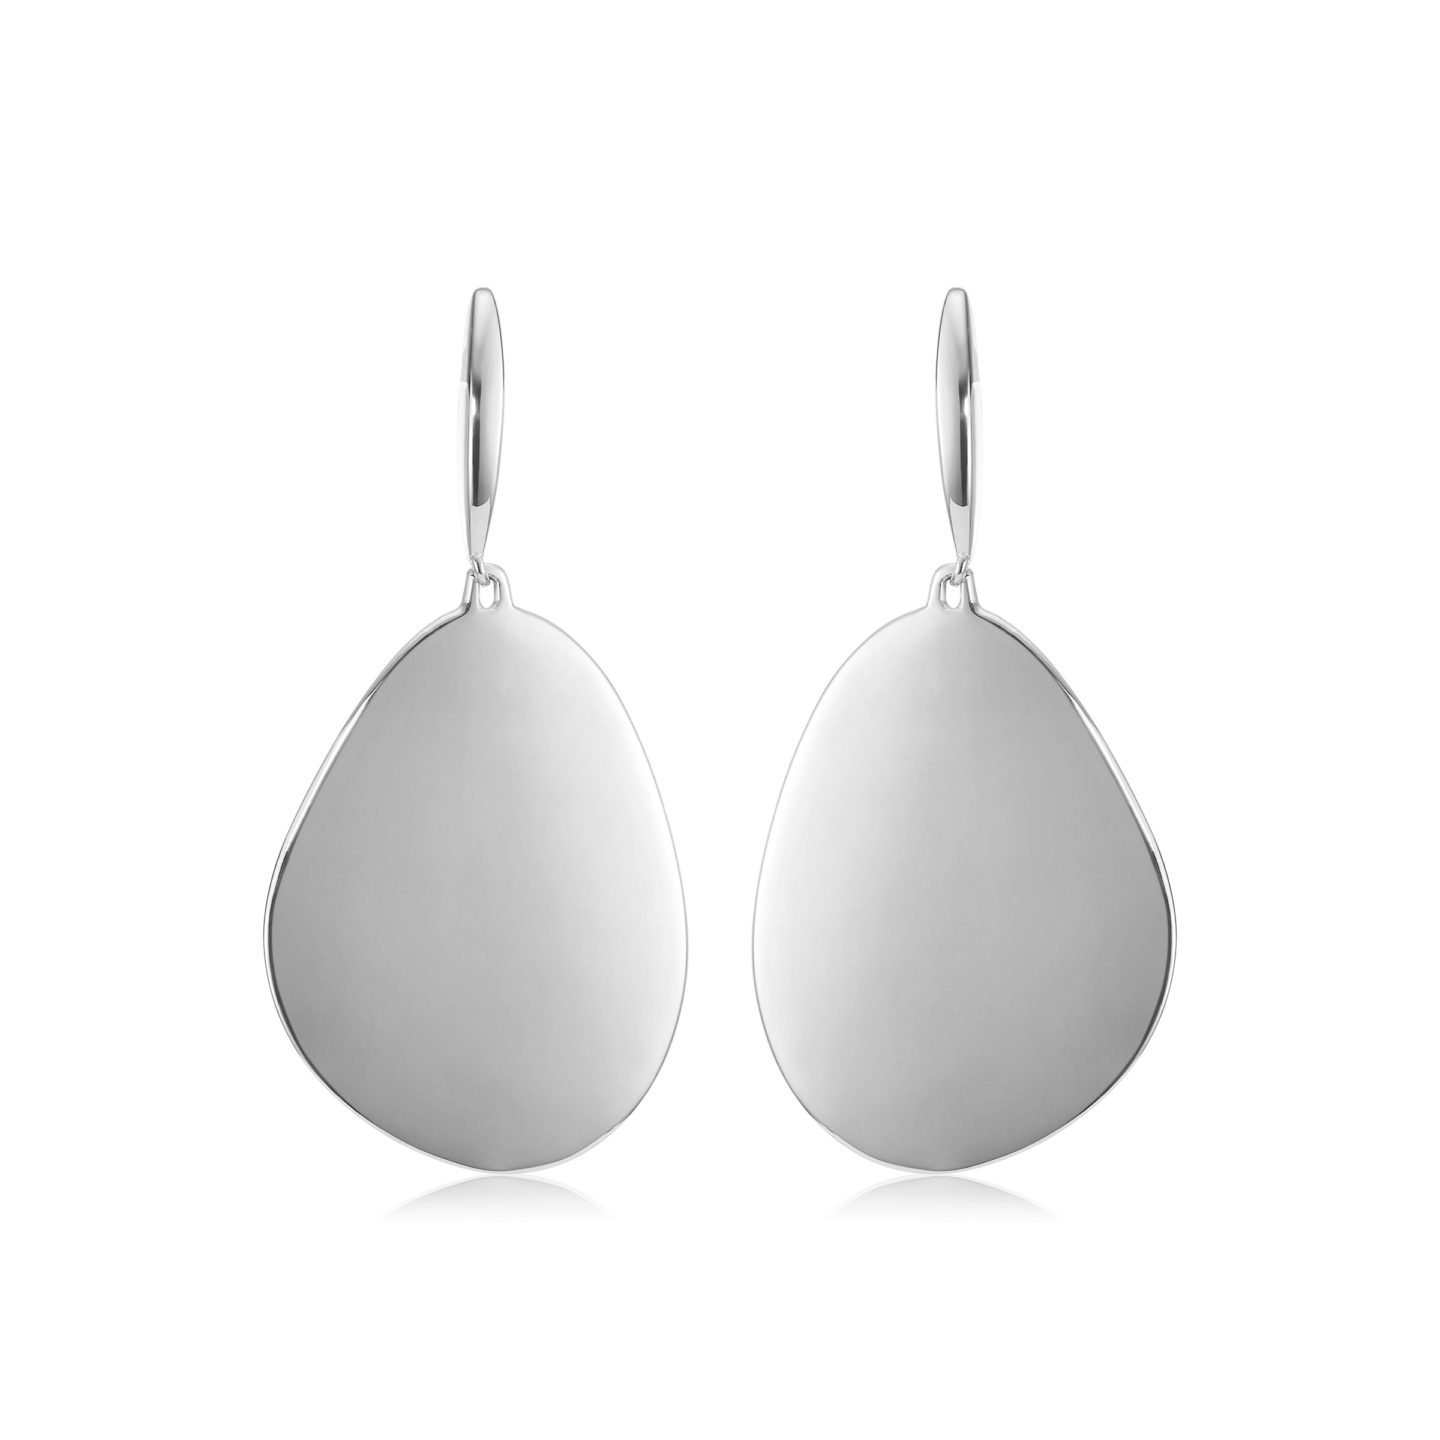 Sterling silver tear drop earrings